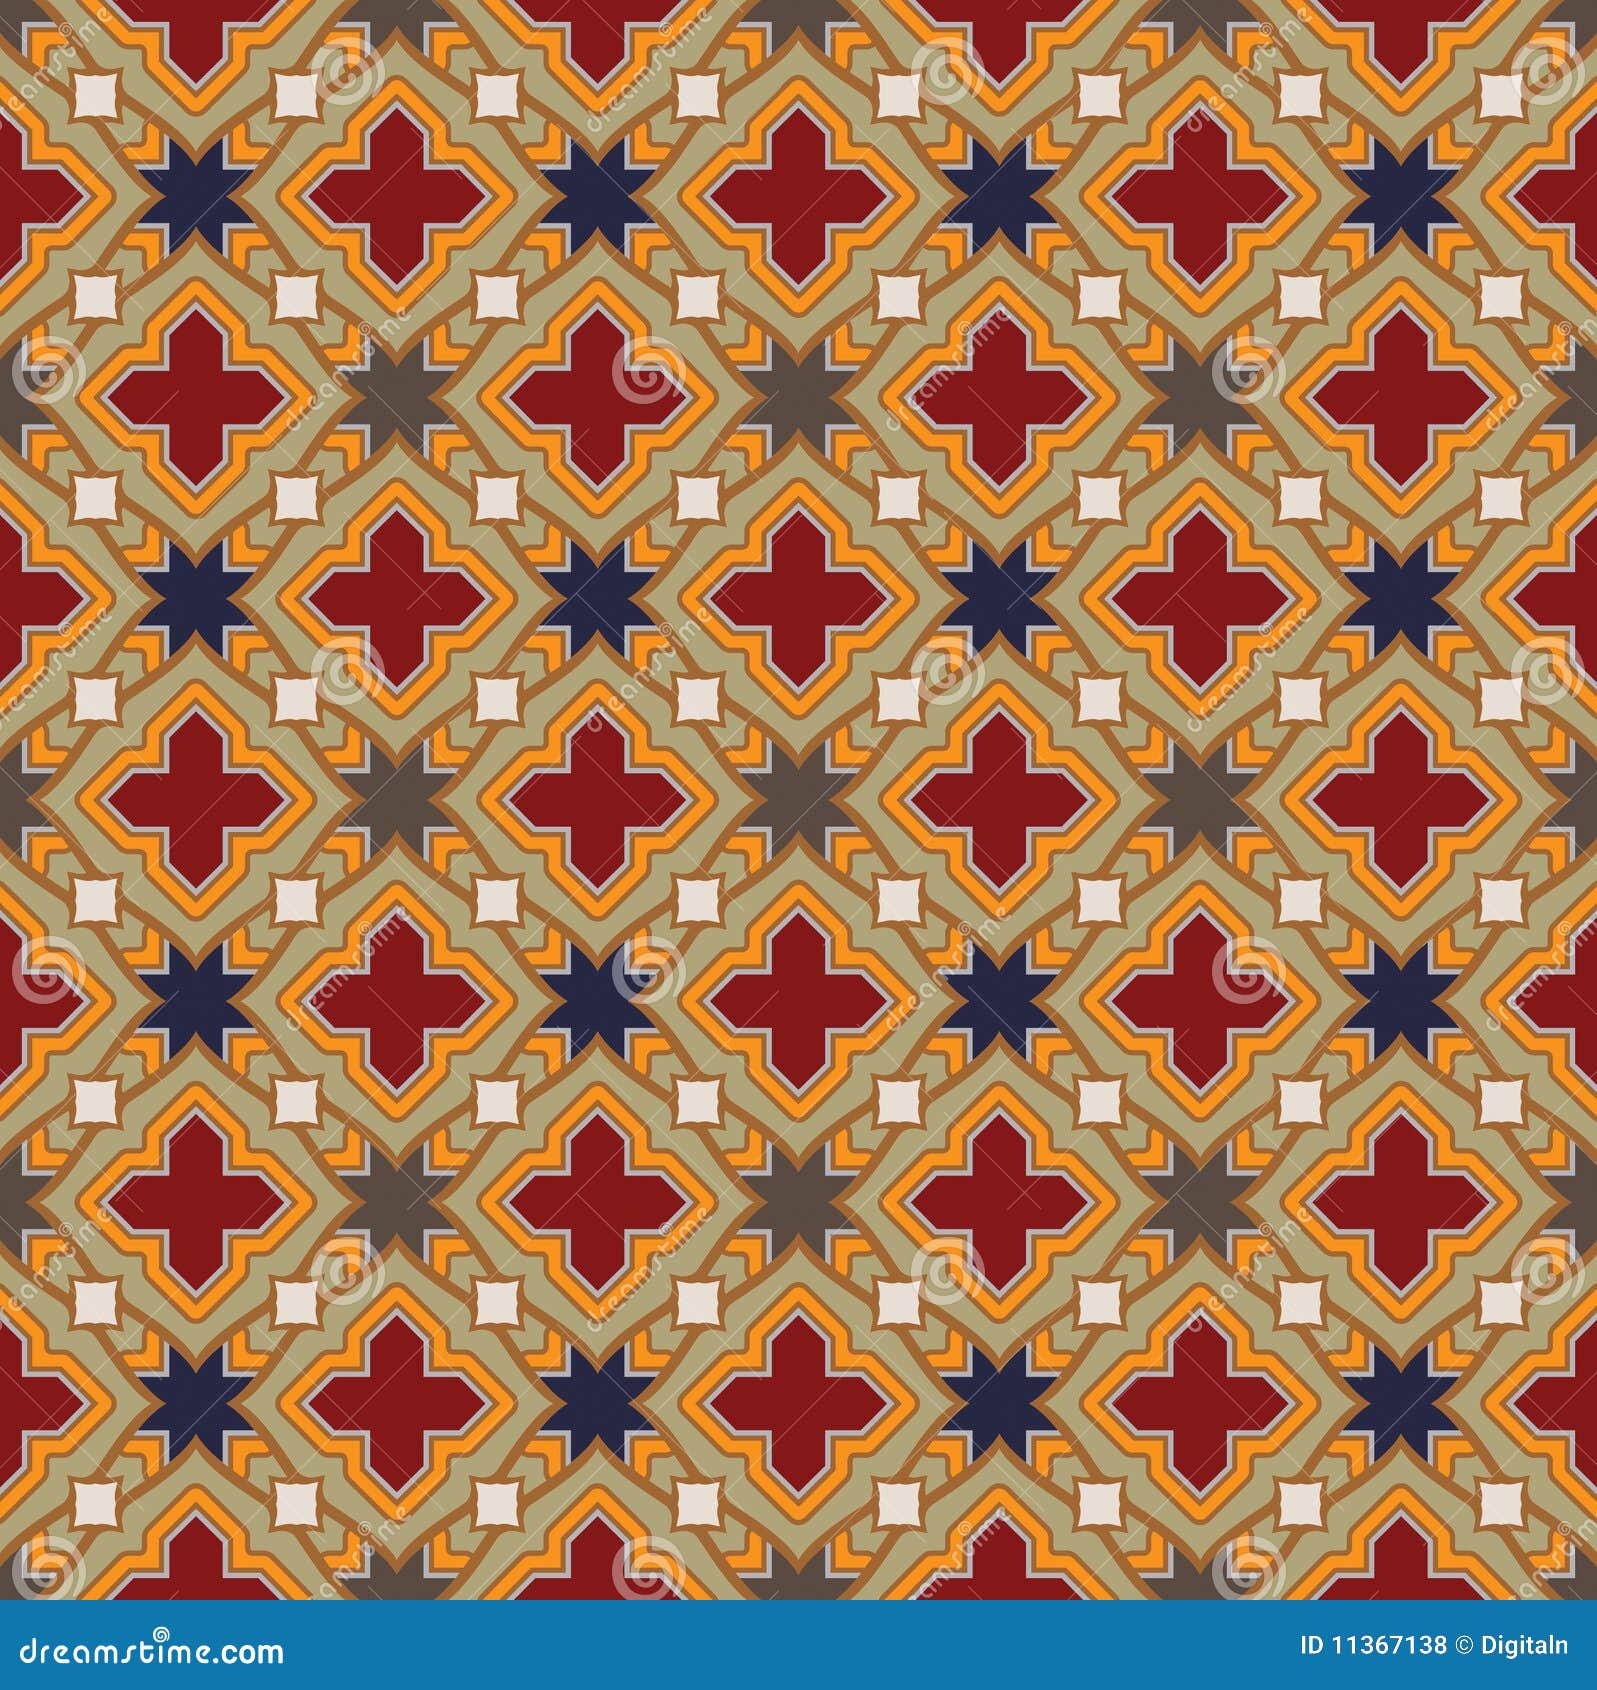 medieval pattern